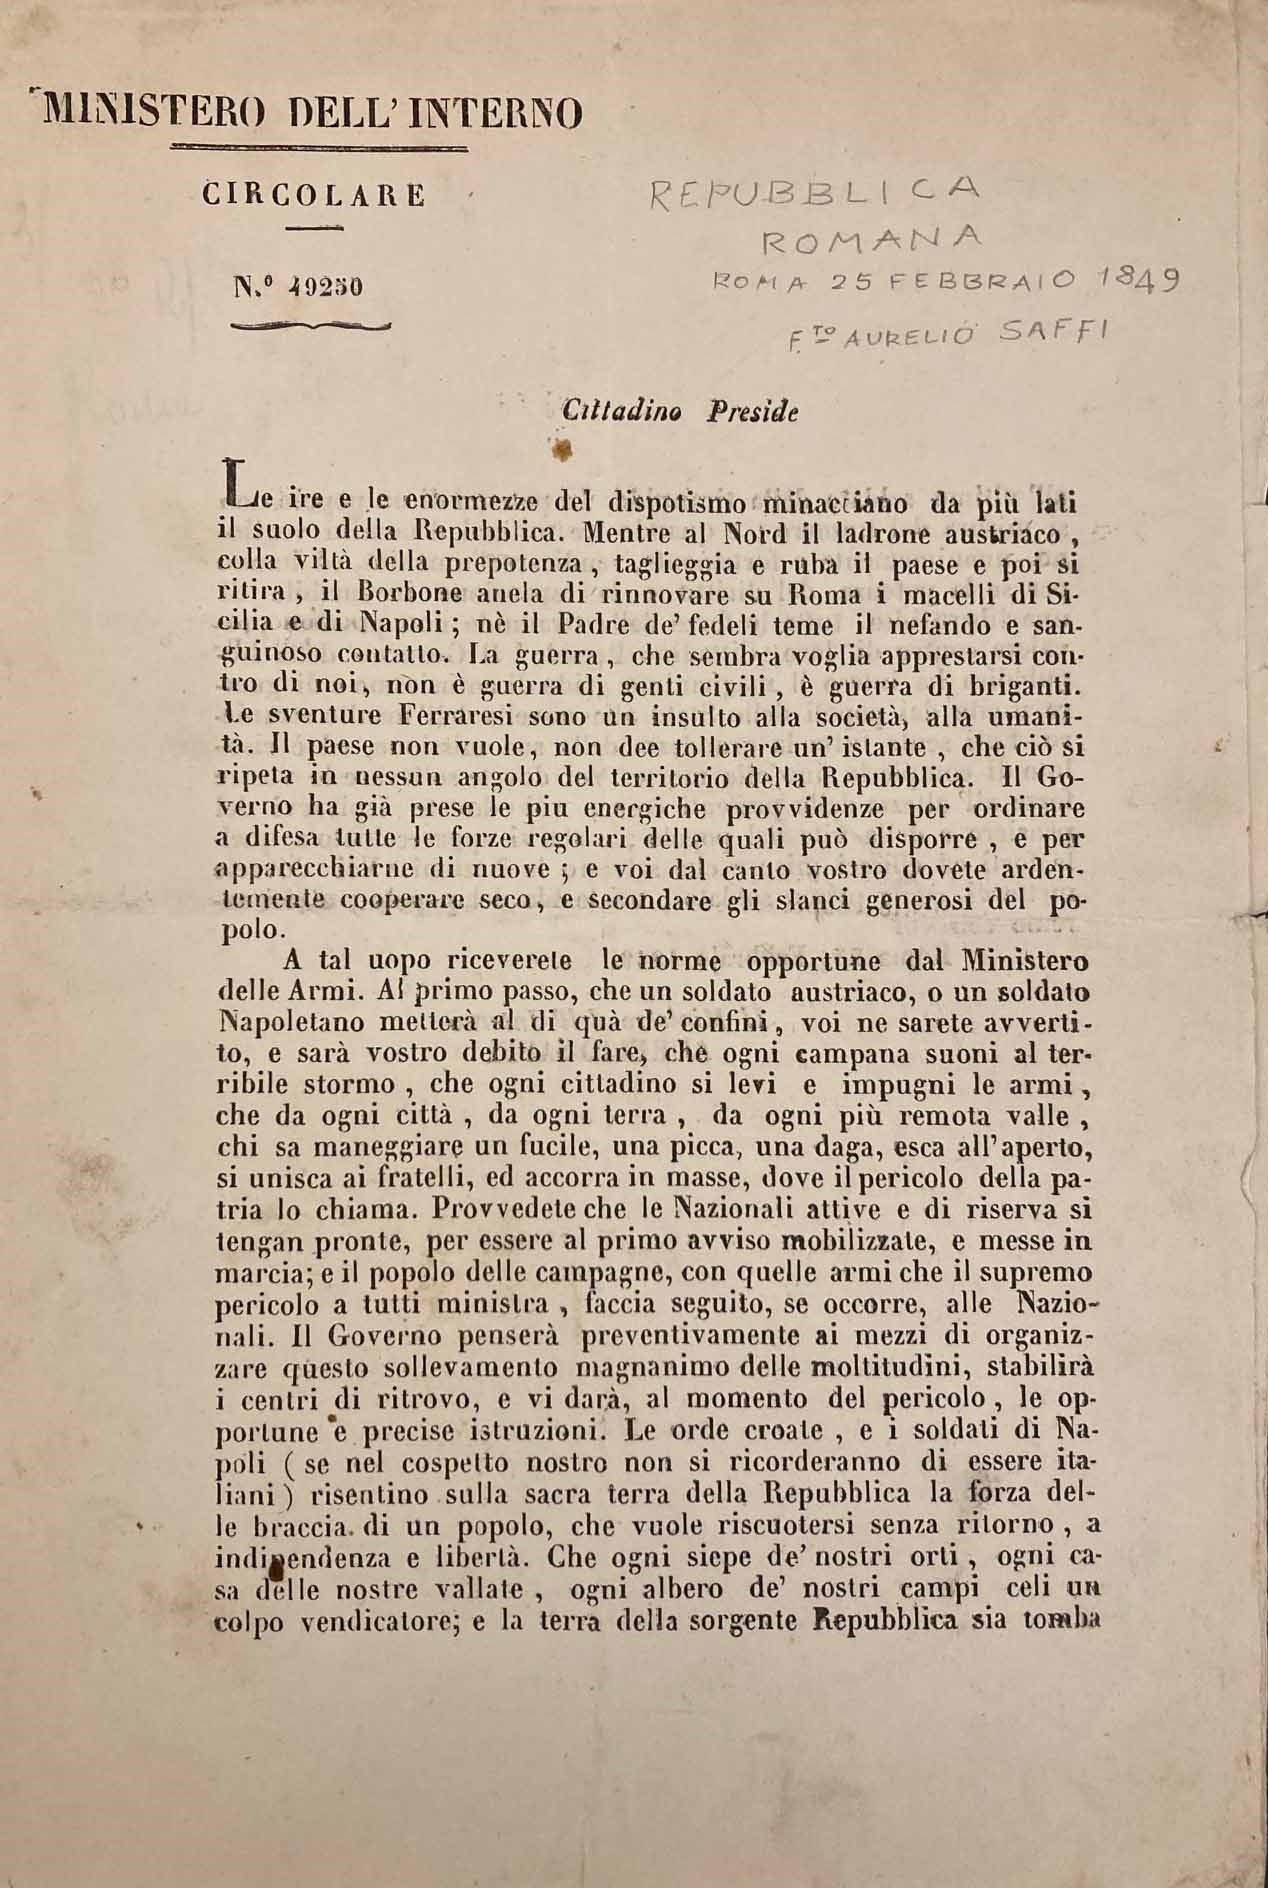 REPUBBLICA ROMANA, circolare di due pagine (cm 31x21) del Ministro dell'Interno &hellip;